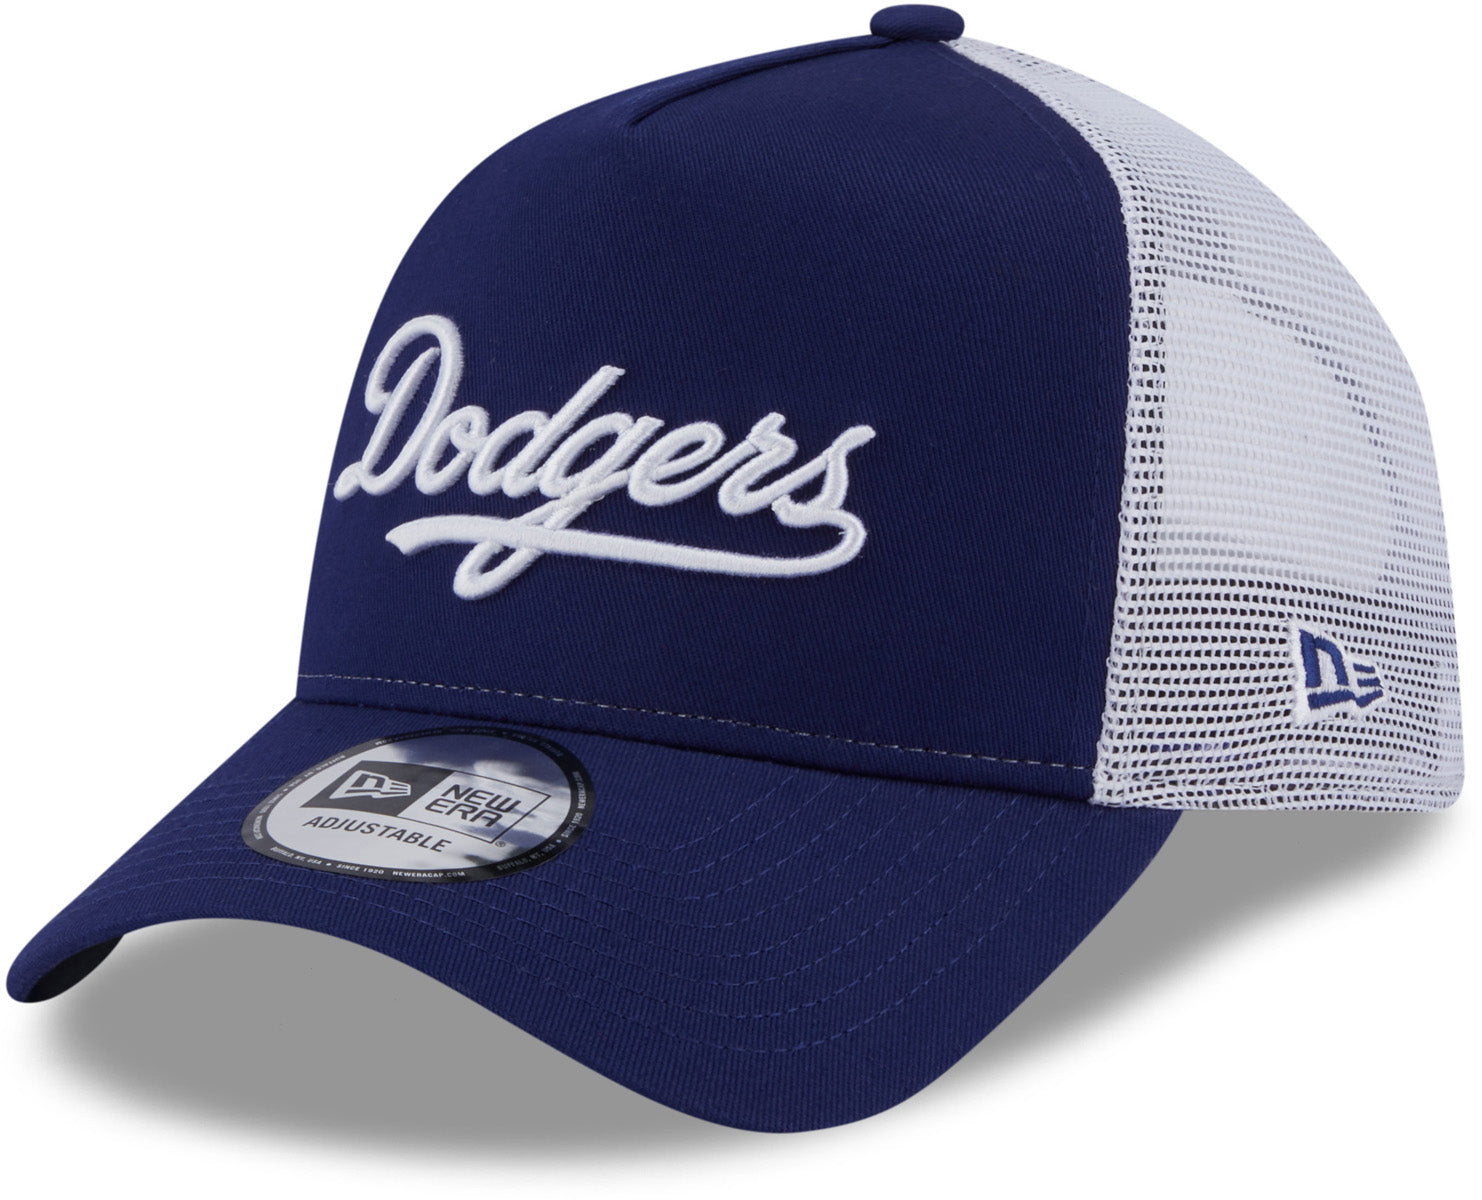 New era Trucker Los Angeles Dodgers Cap Blue